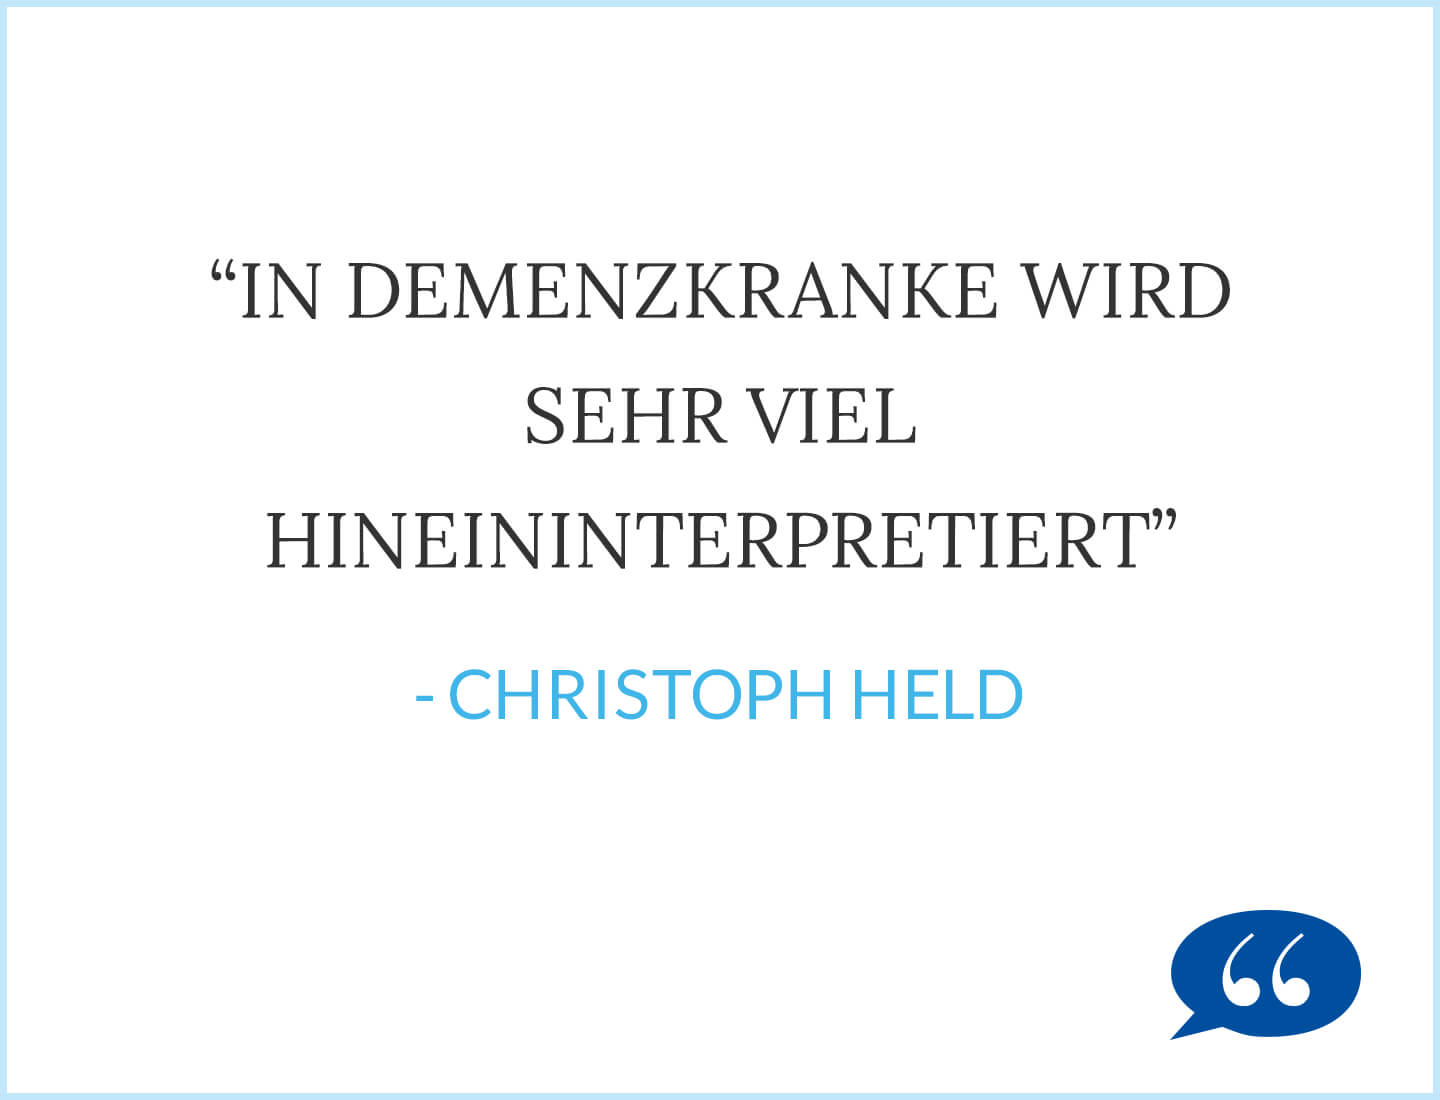 In Demenzkranke wird sehr viel hineininterpretiert - Christoph Held